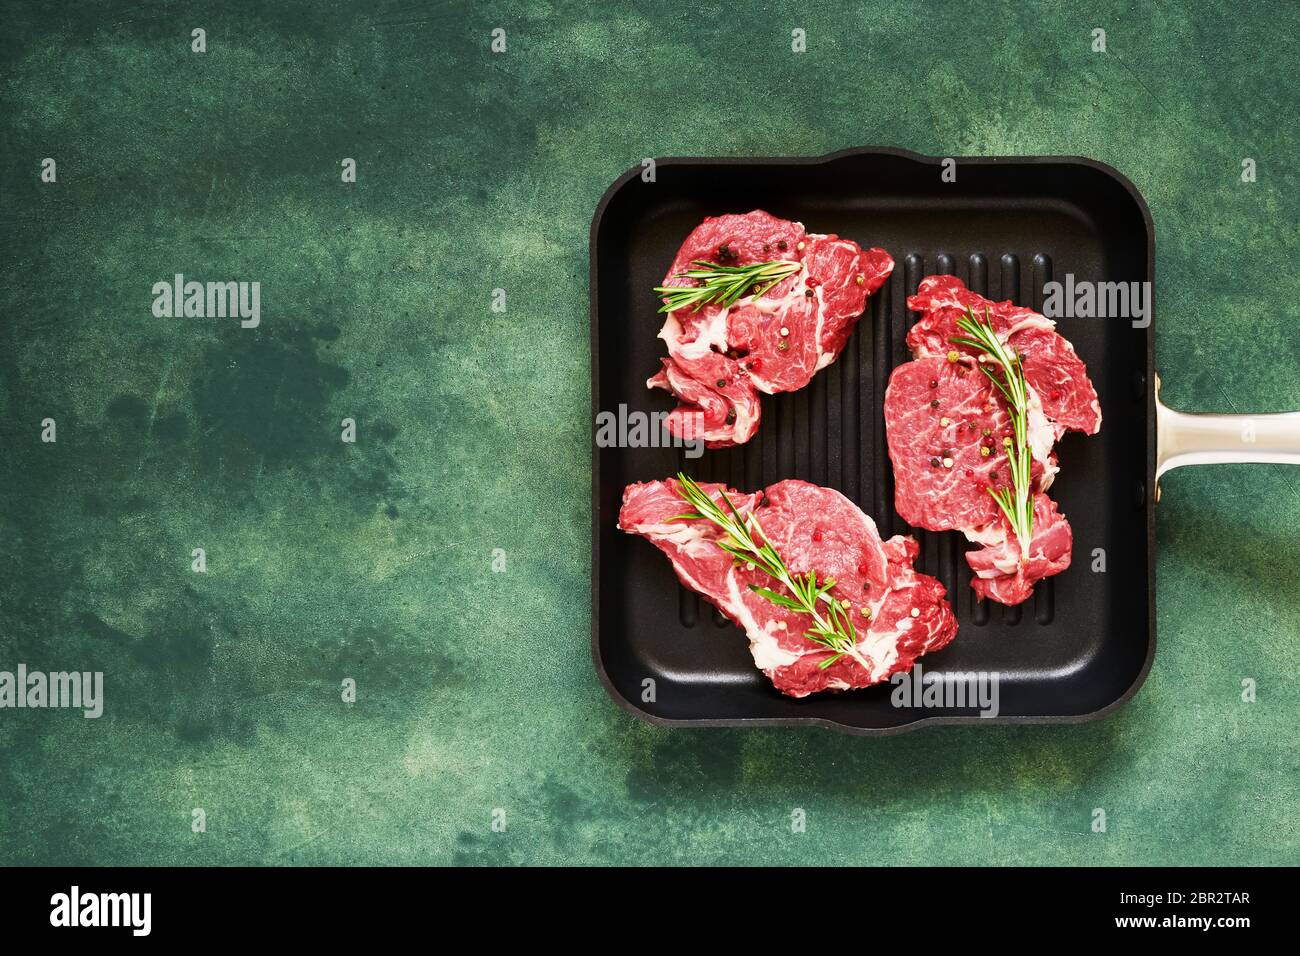 Trois steaks de bœuf frais, crus, au romarin et au poivre, dans une casserole sur fond de béton vert. Vue de dessus, espace de copie pour le texte. Banque D'Images